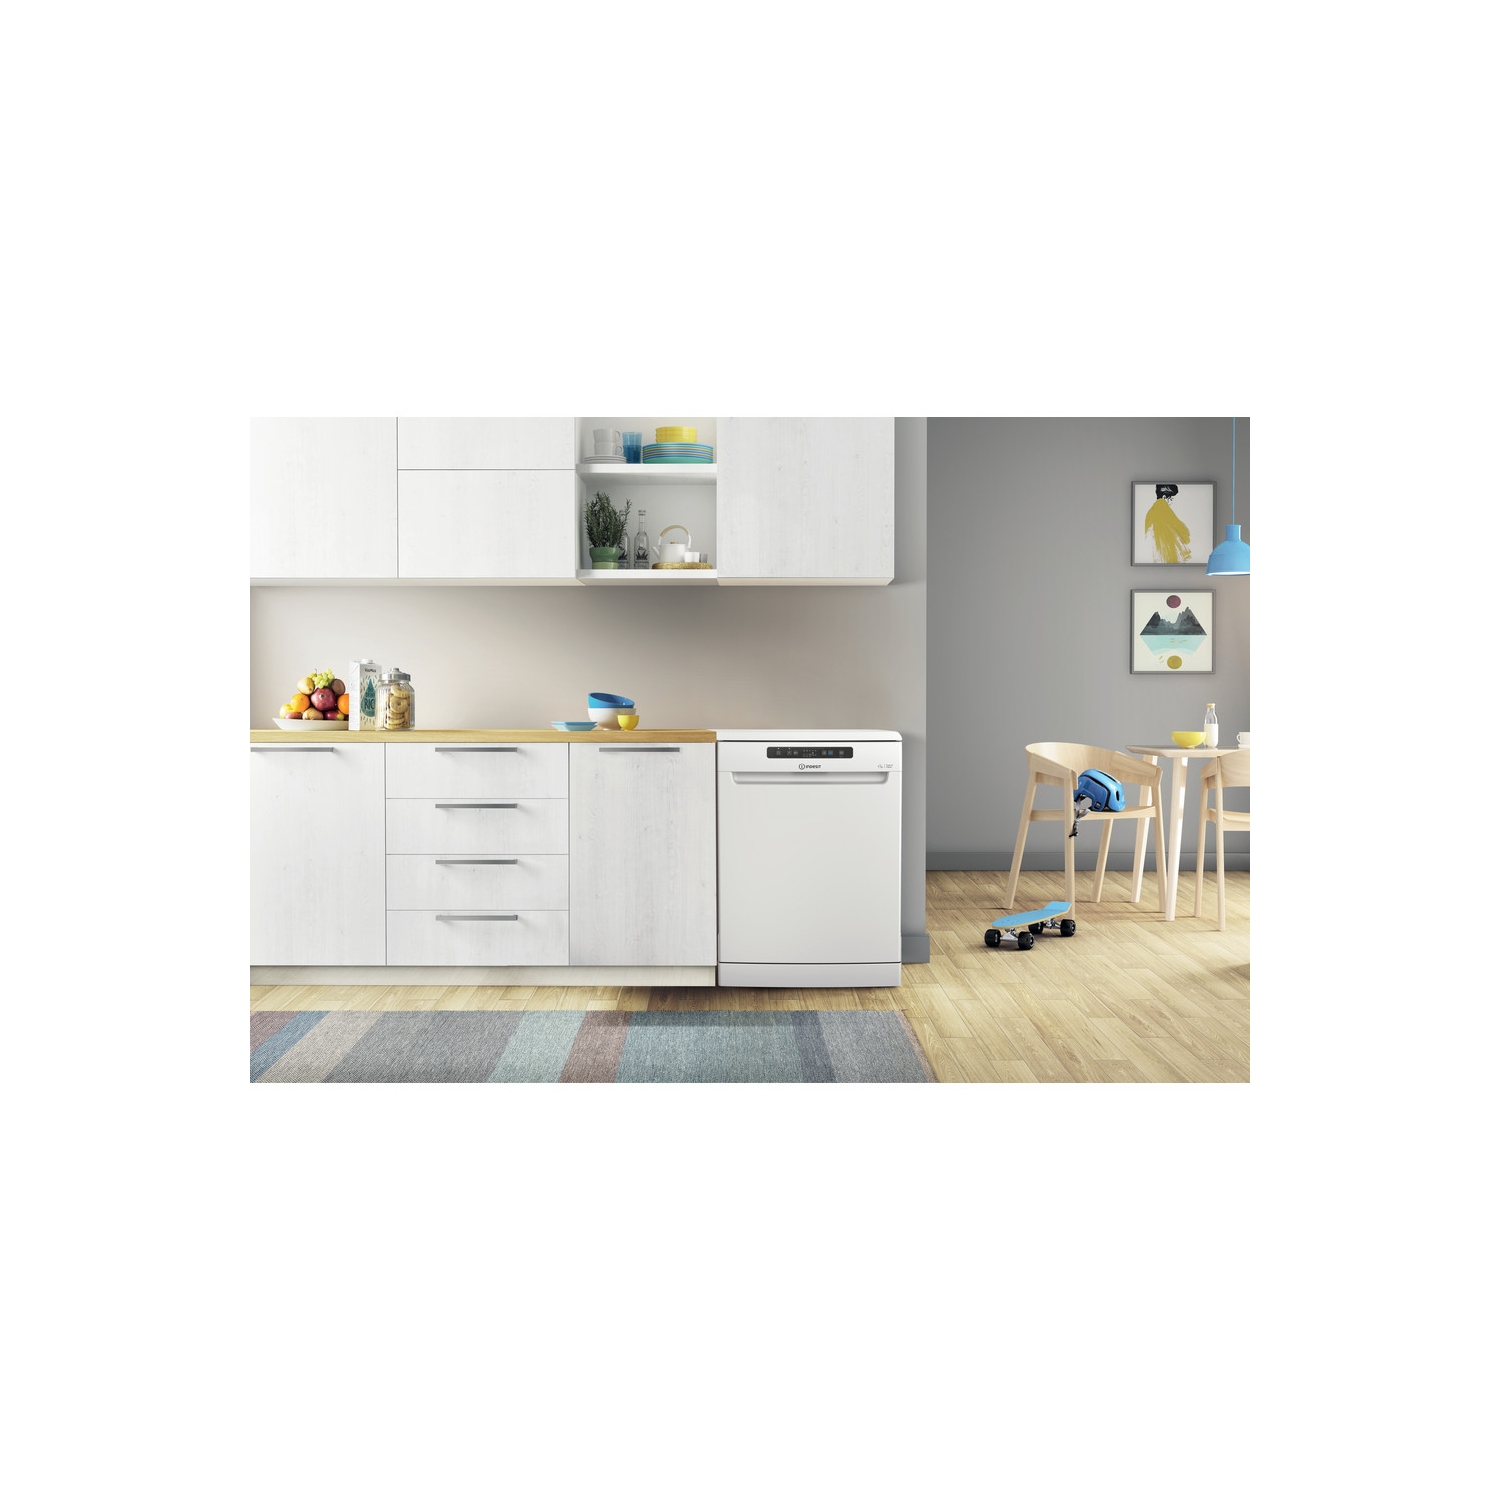 Indesit DFC2B16UK Full Size Dishwasher - White - 13 Place Settings - 8